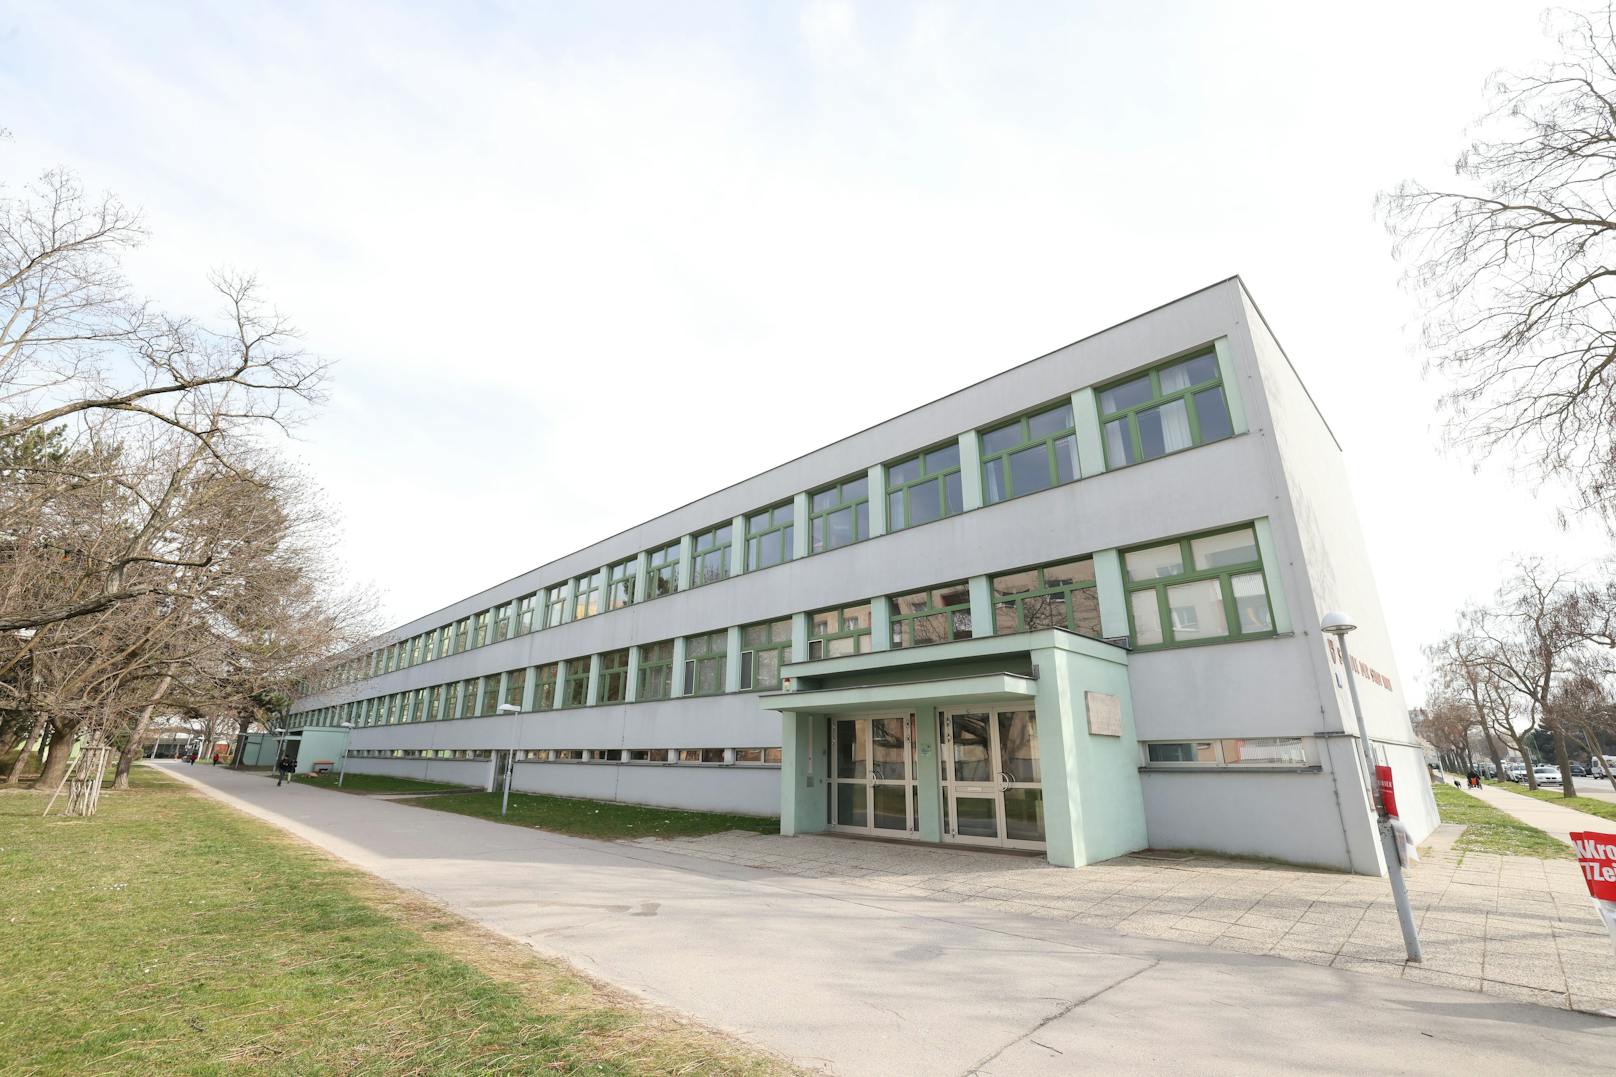 Die Schule in Wien-Floridsdorf machte Präventionsworkshops, erteilte jedoch keinen Schulverweis gegen die Beschuldigte.